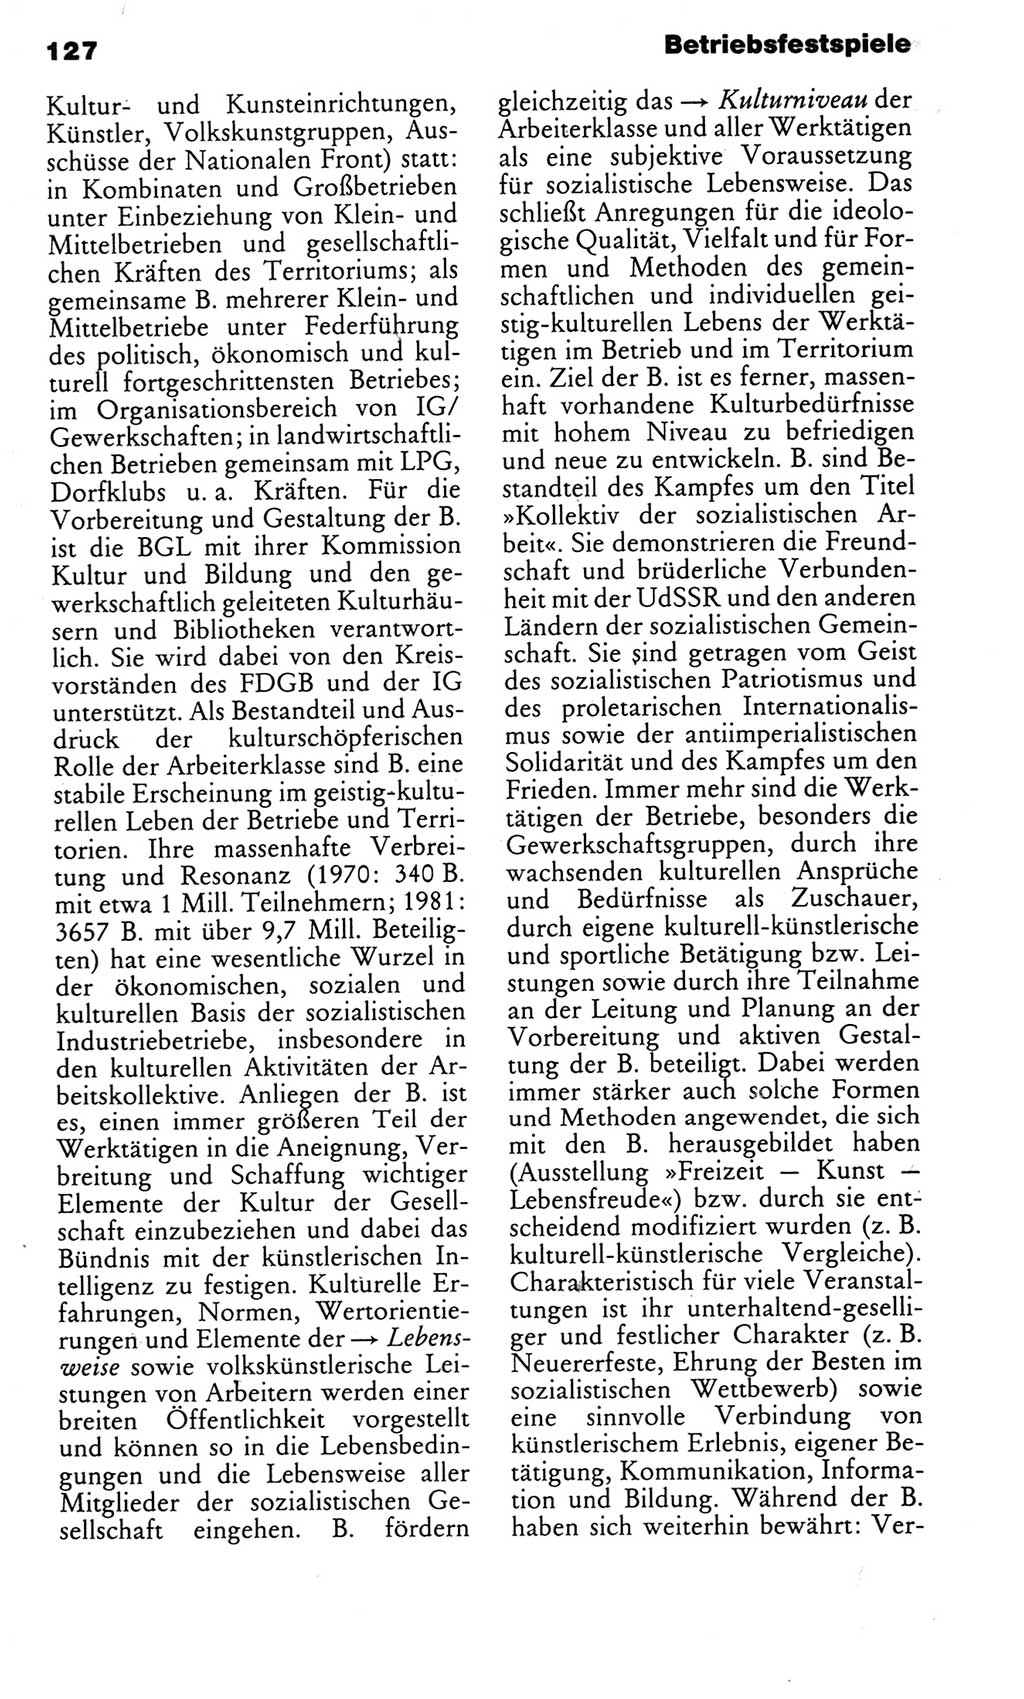 Kleines politisches Wörterbuch [Deutsche Demokratische Republik (DDR)] 1983, Seite 127 (Kl. pol. Wb. DDR 1983, S. 127)